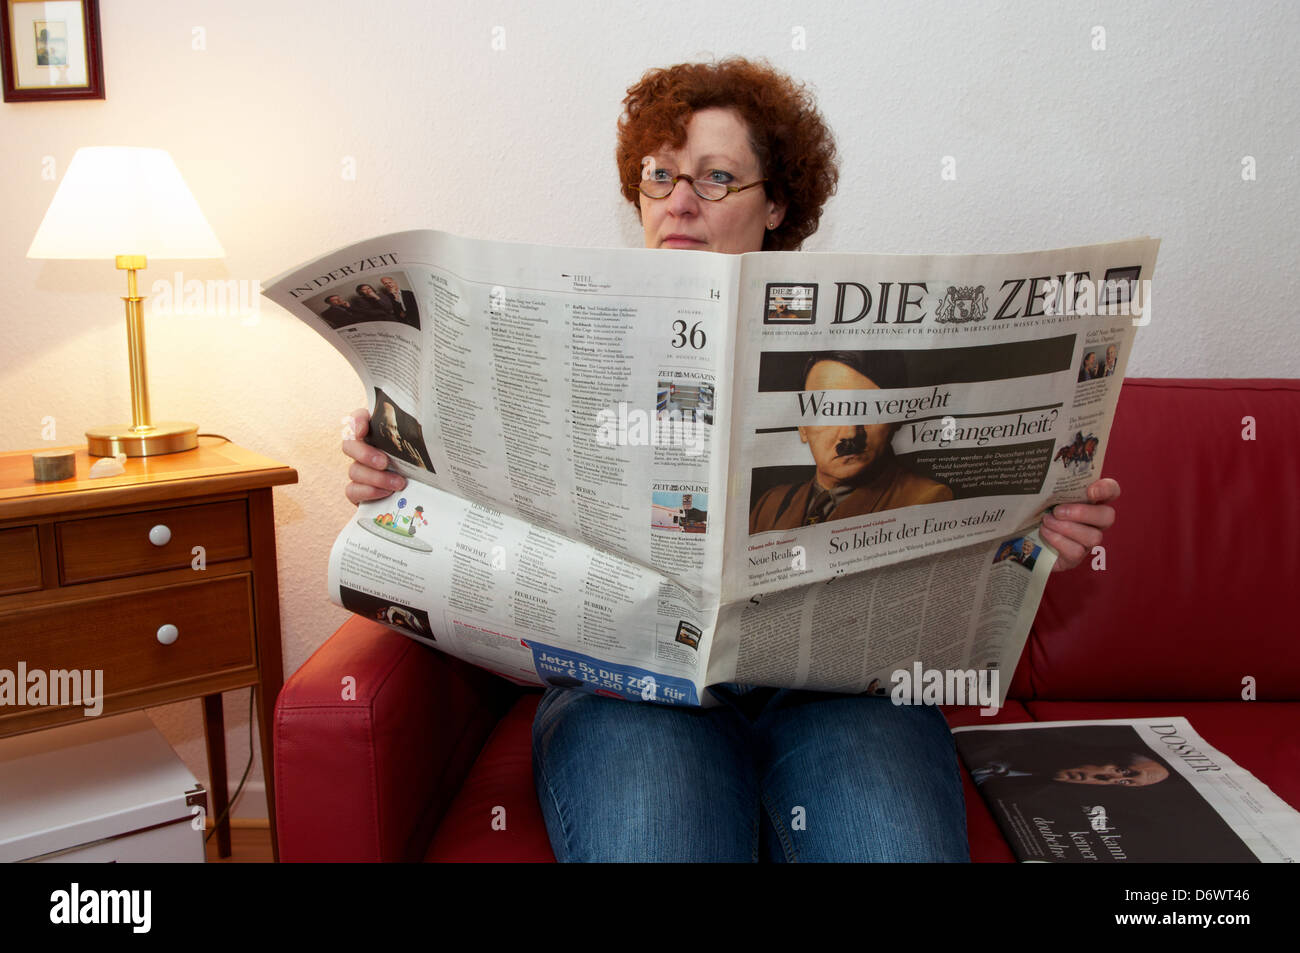 Die Zeit newspaper Stock Photo